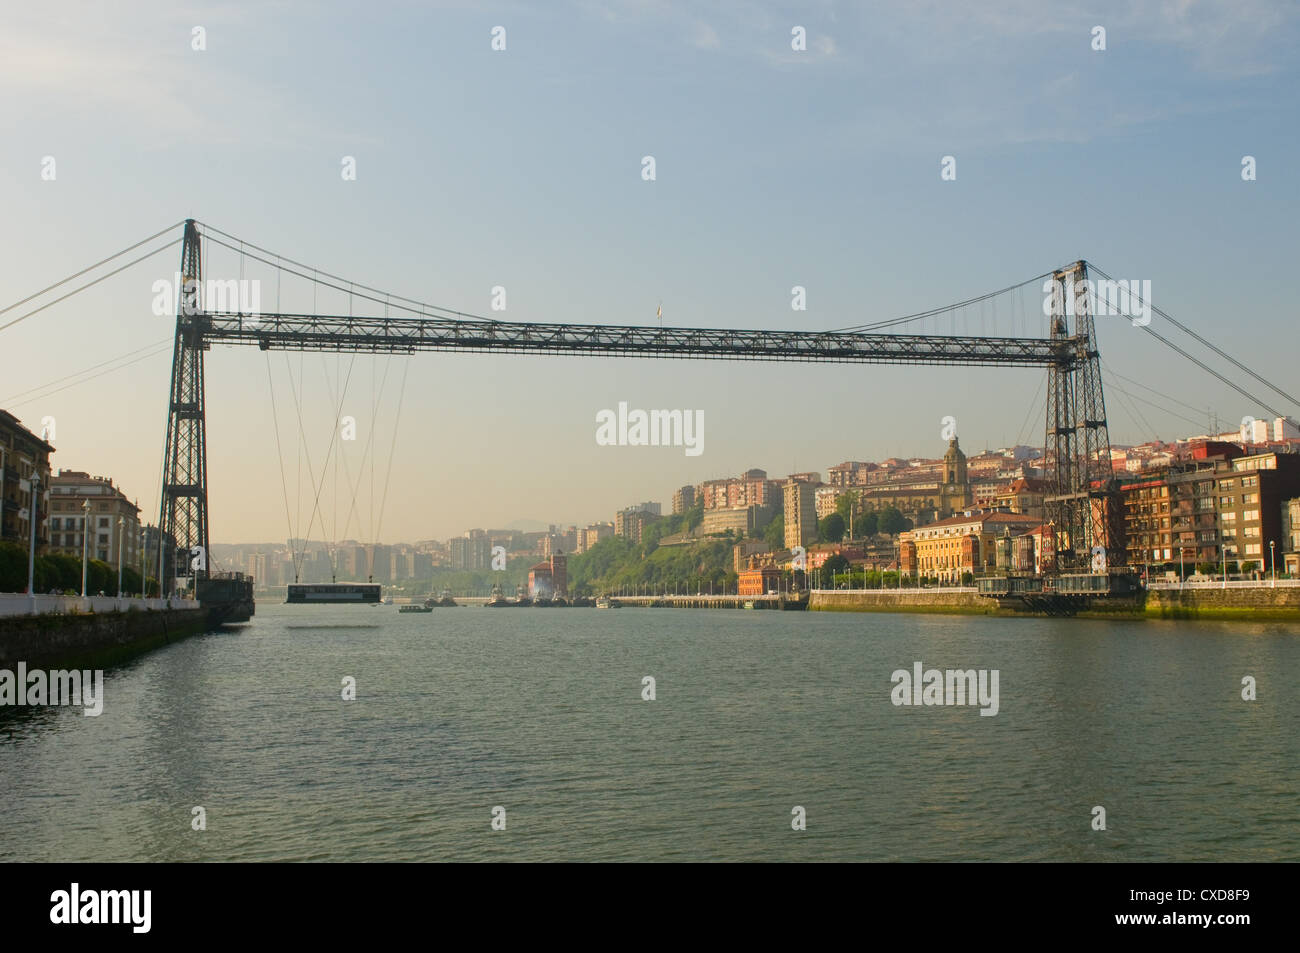 Puente Colgante or Vizcaya Bridge, Spain Stock Photo